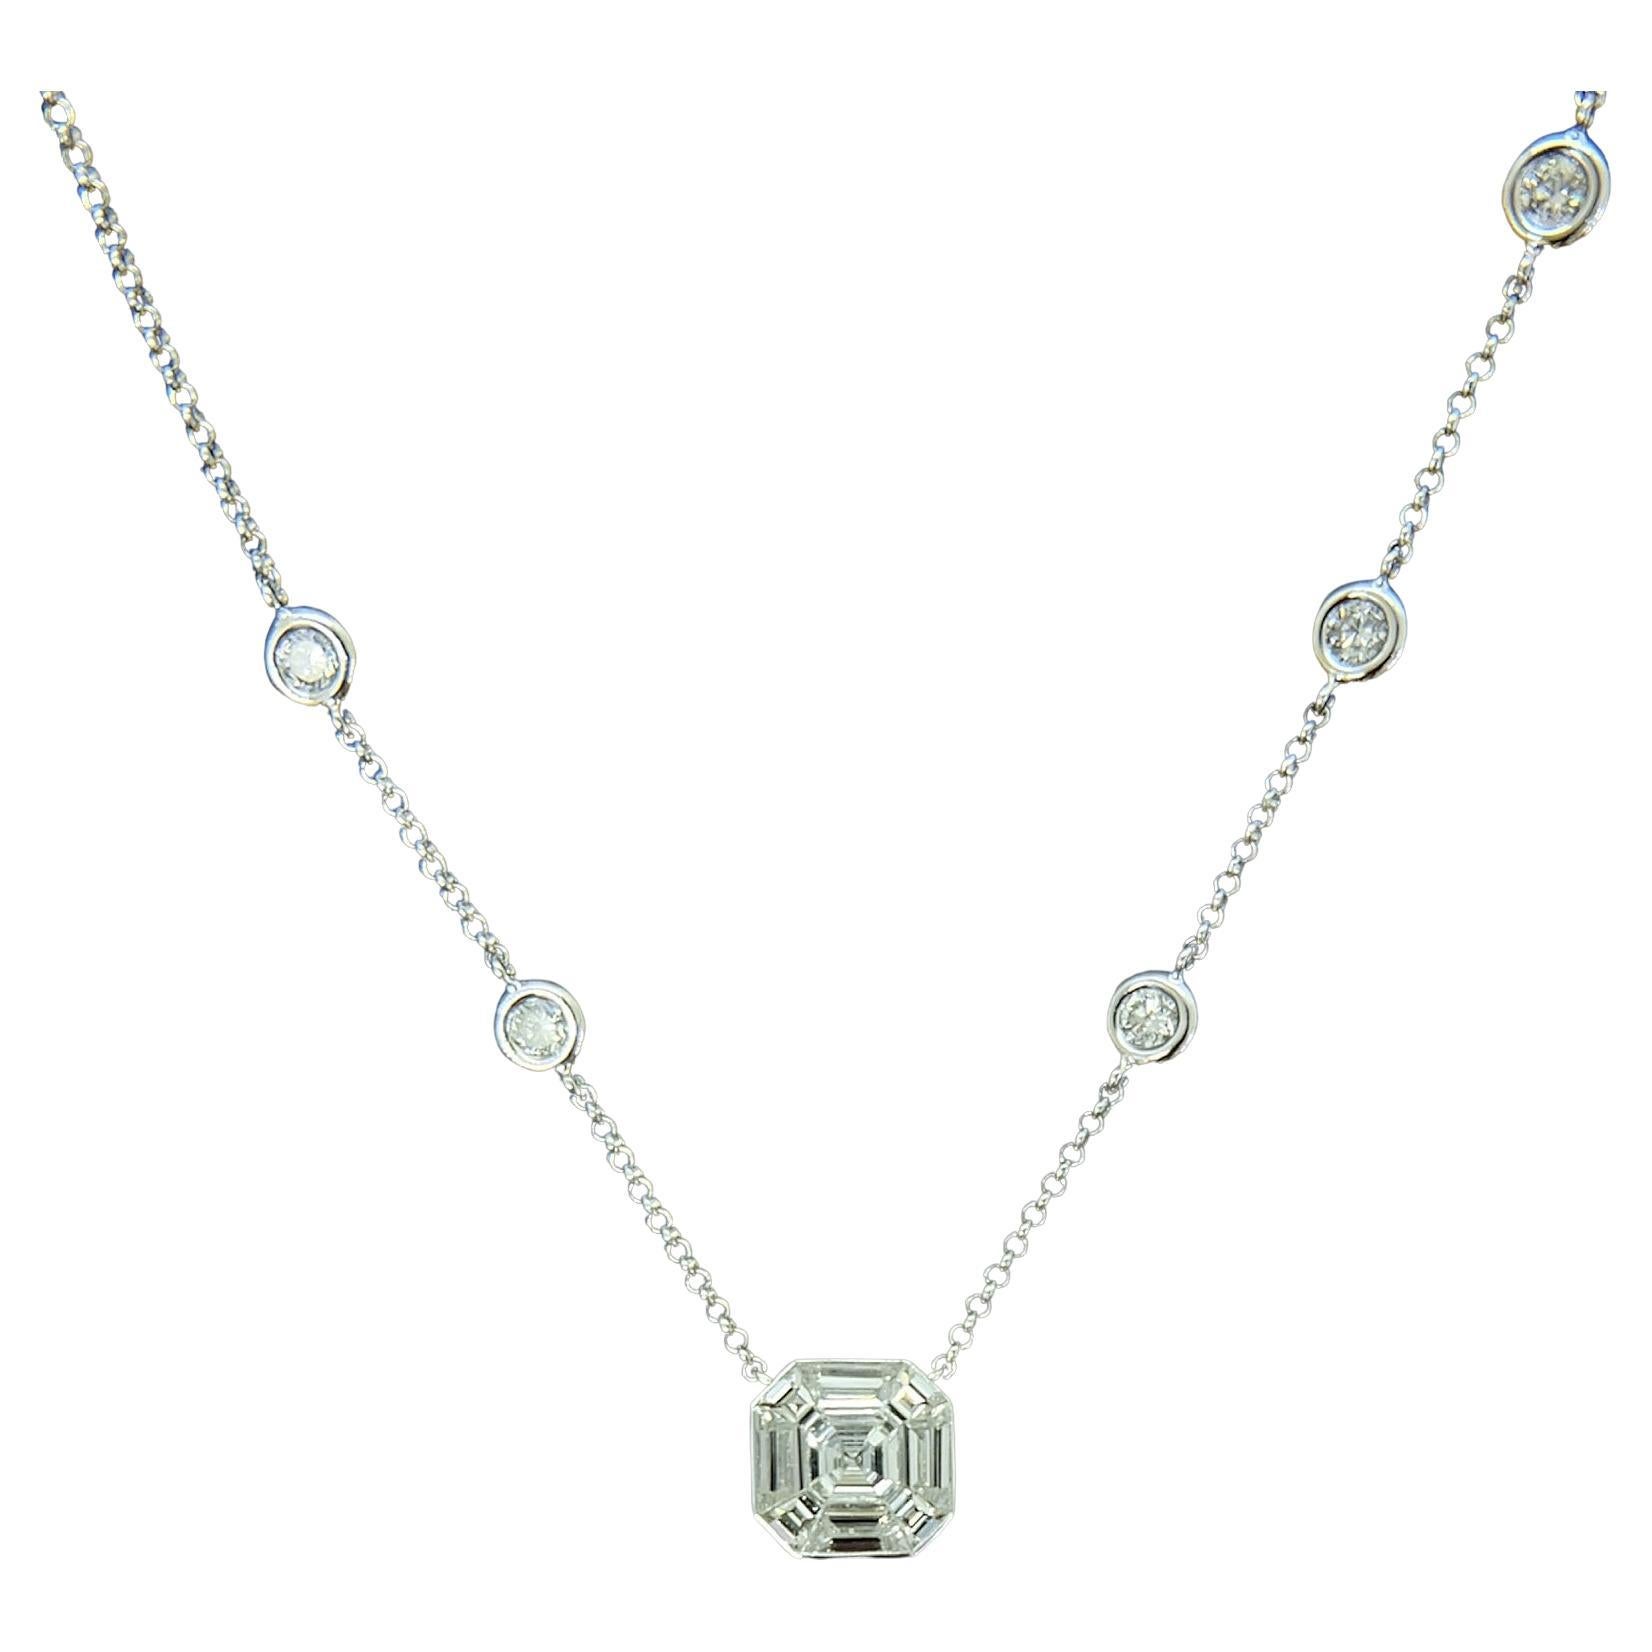 Sophia D. 0.92 Carat Diamond Pendant Necklace